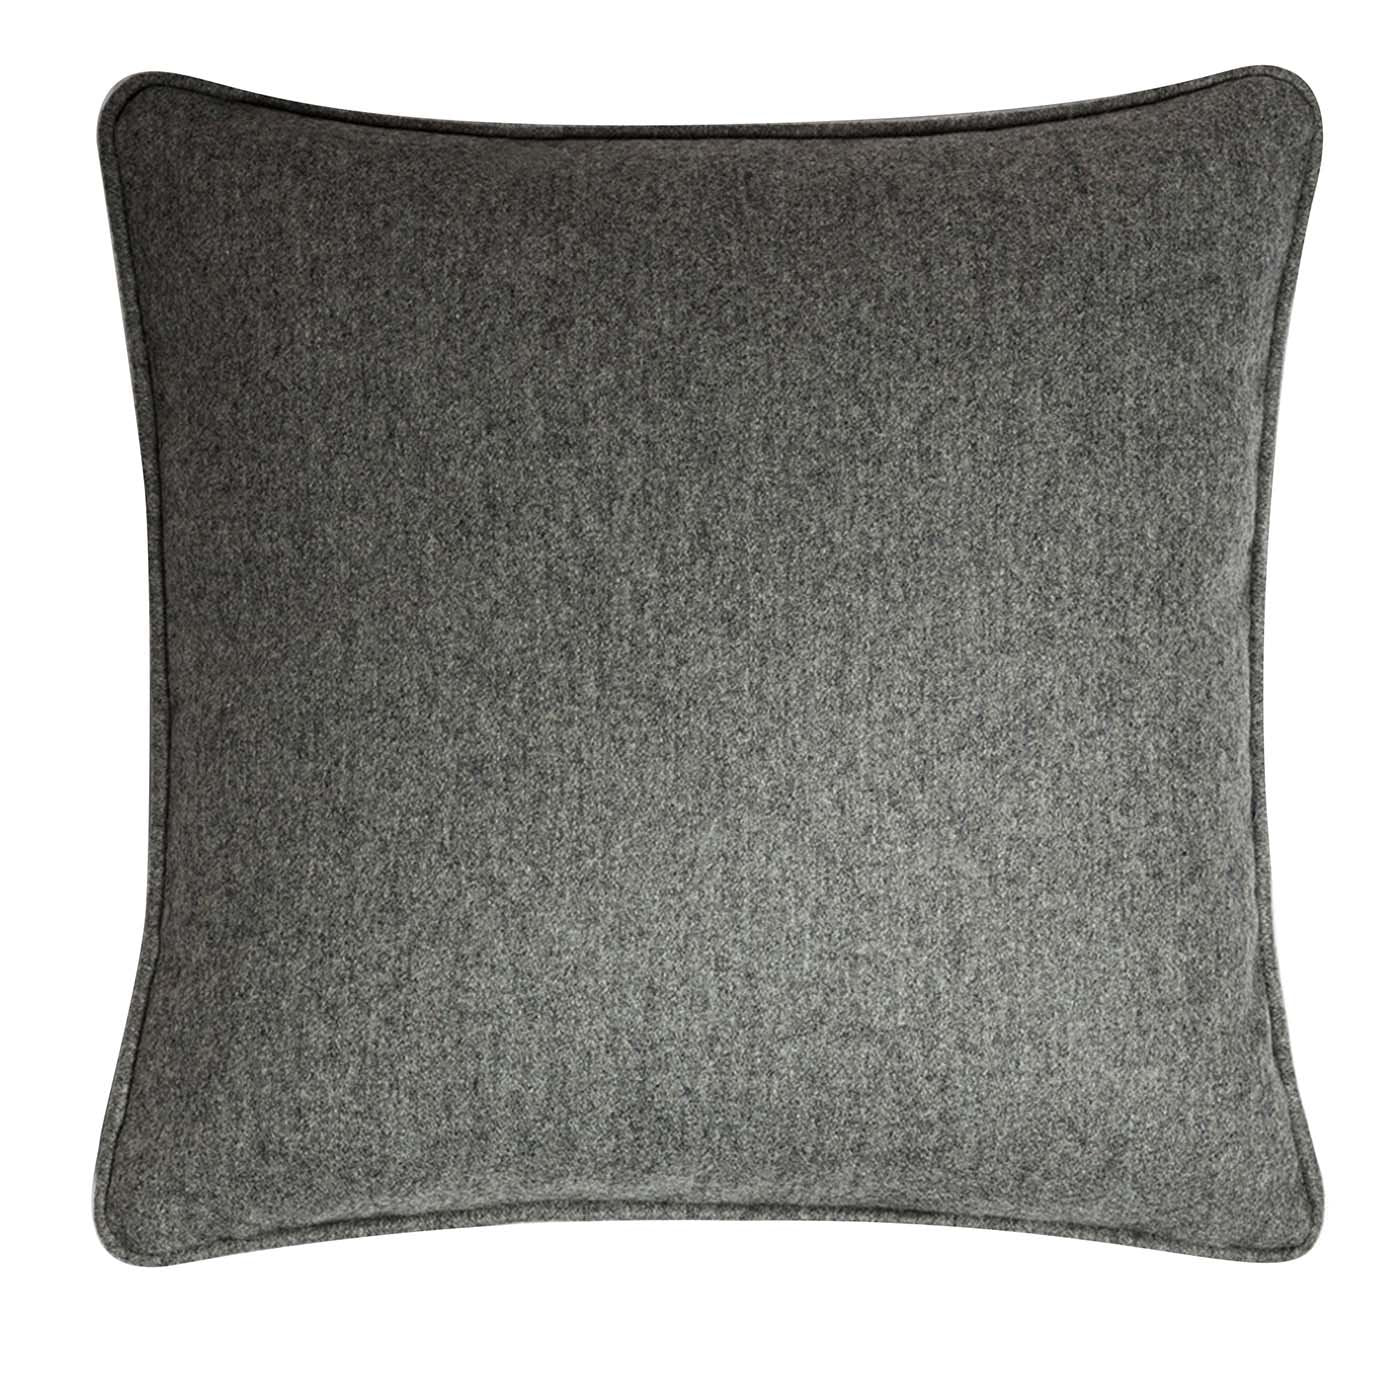 Wool Dark Gray Cushion - Main view